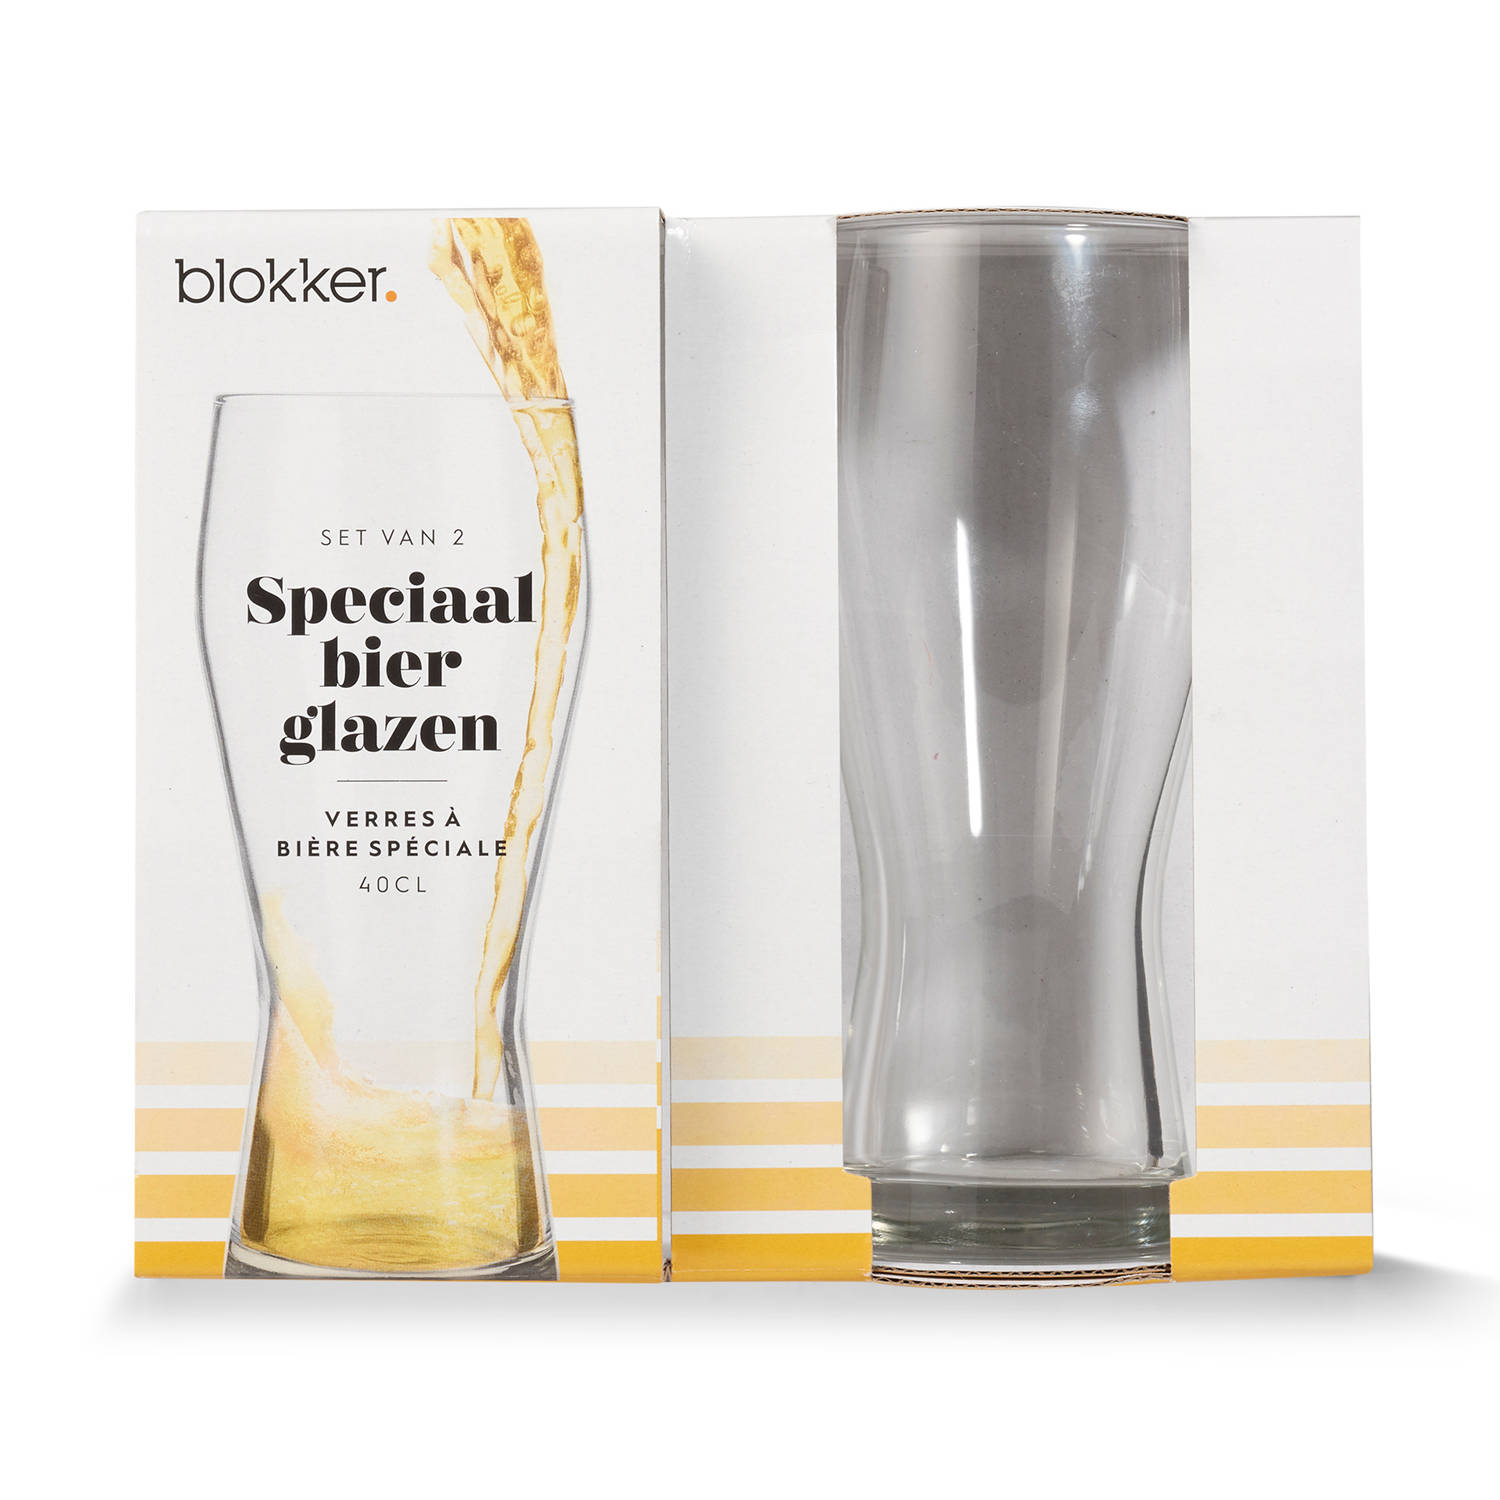 schrijven De waarheid vertellen Of Blokker speciaalbier glazen - hoog - 40 cl - set van 2 | Blokker